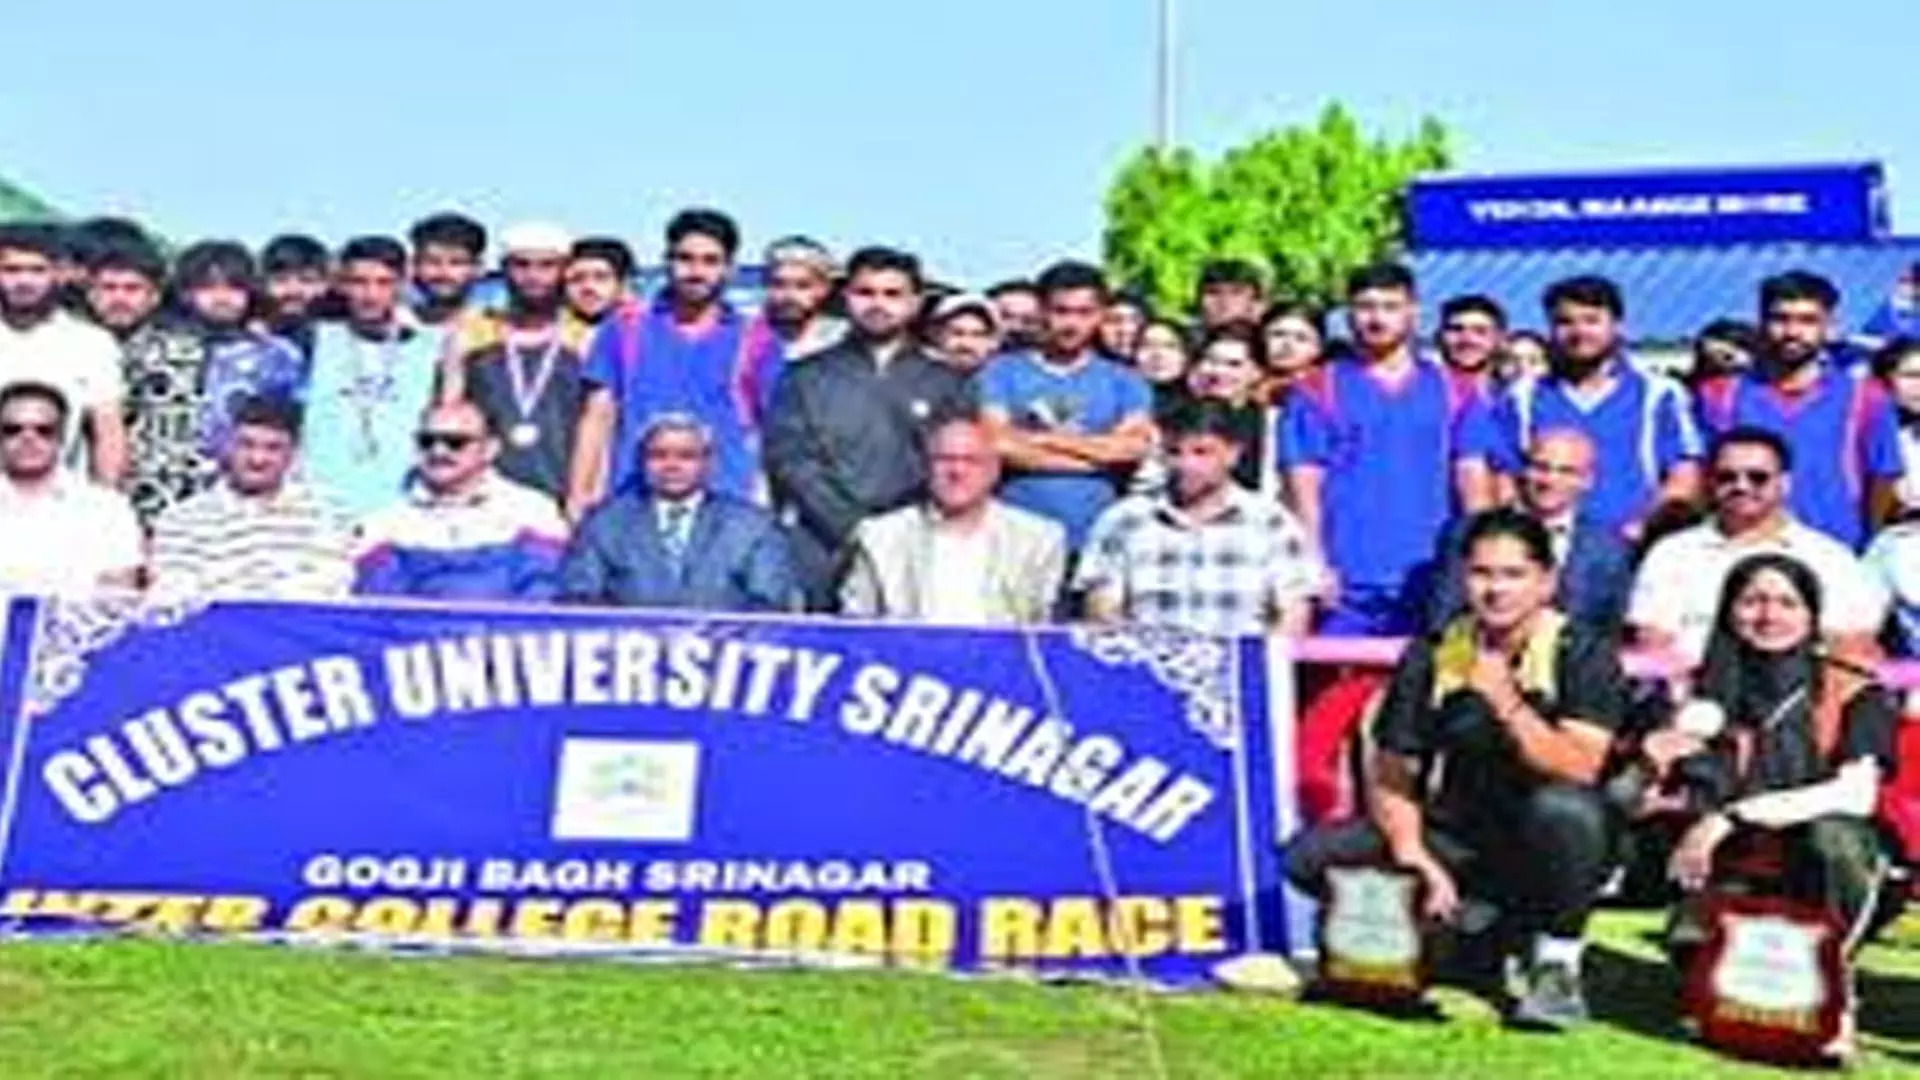 Srinagar News: क्लस्टर विश्वविद्यालय श्रीनगर ने अंतर महाविद्यालय रोड रेस का आयोजन किया